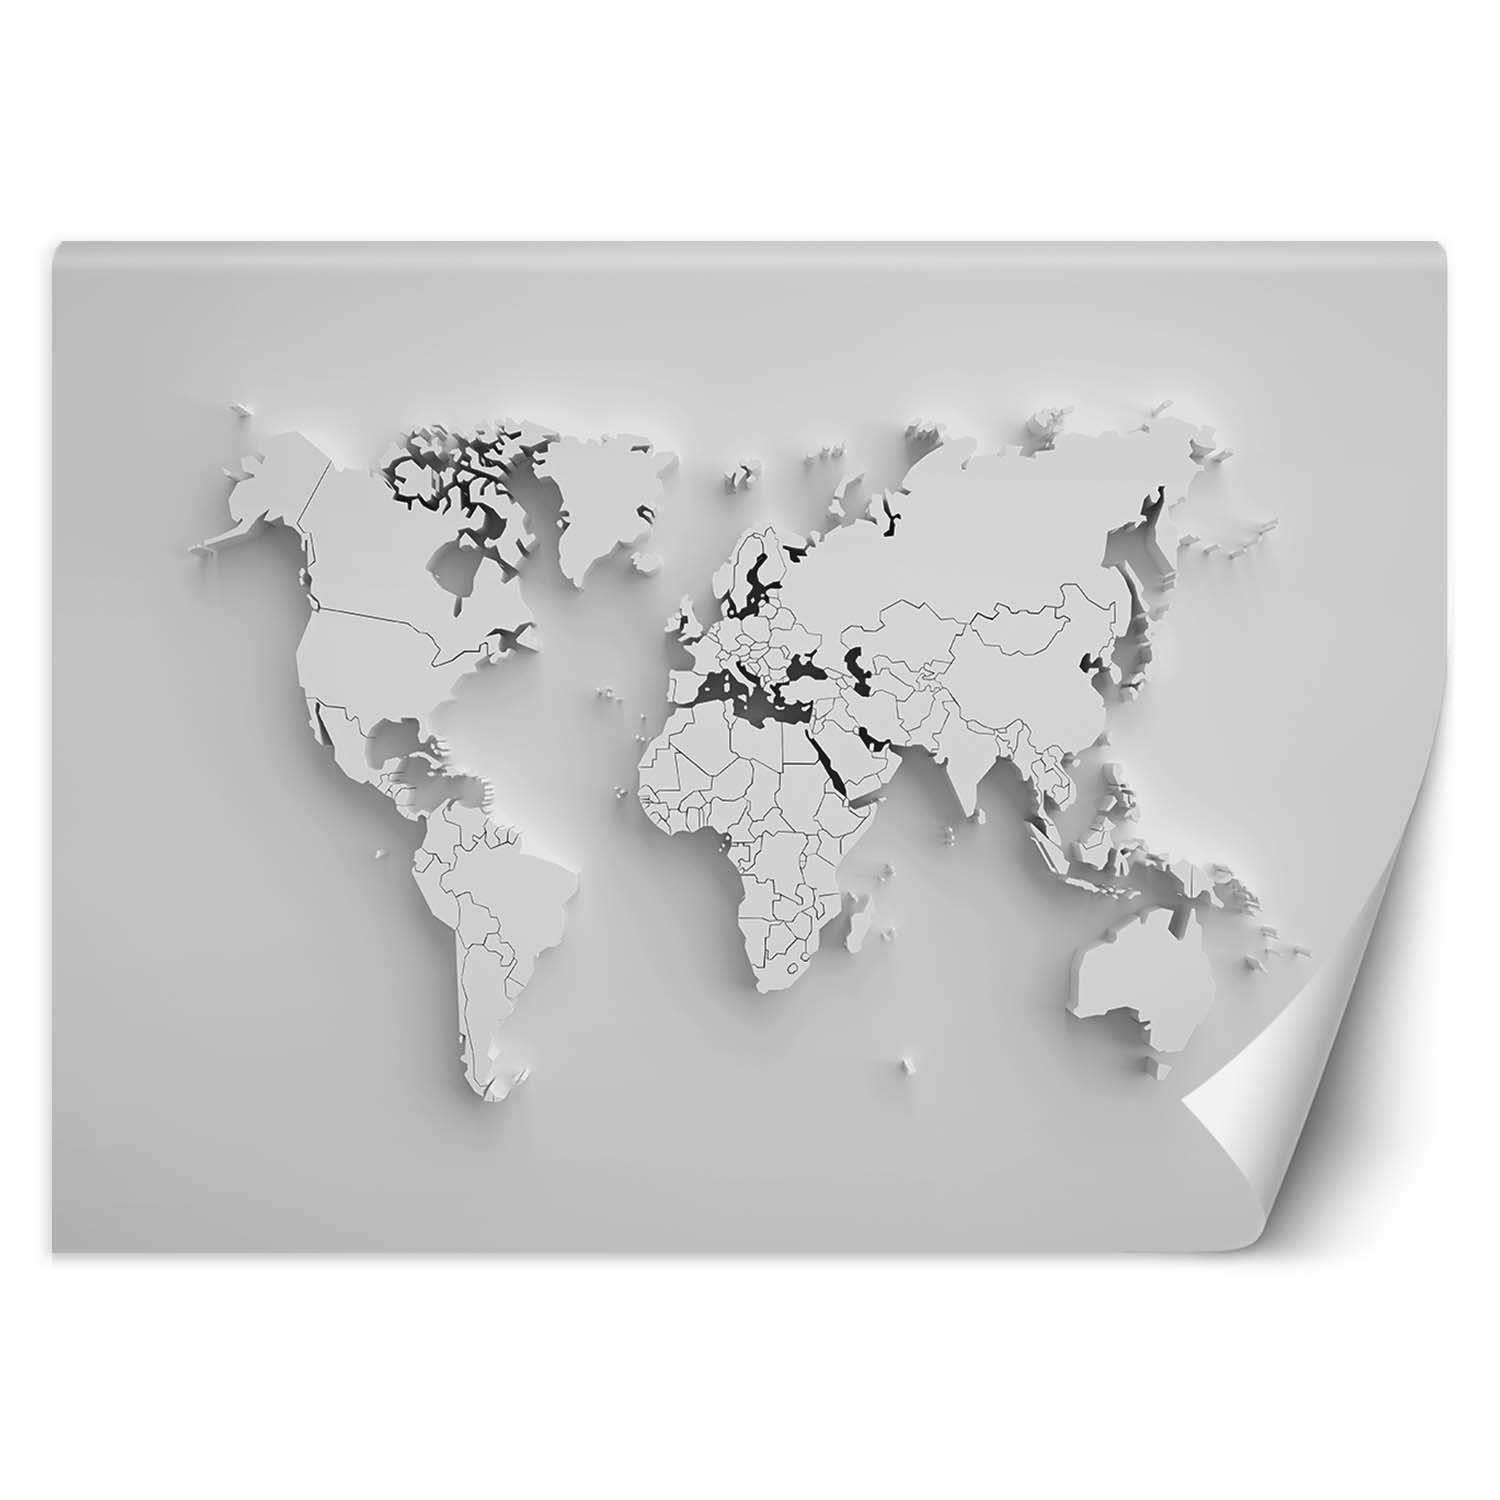 Trend24 – Behang – Overzicht Van Continents 3D – Behangpapier – Fotobehang 3D – Behang Woonkamer – 250x175x2 cm – Incl. behanglijm